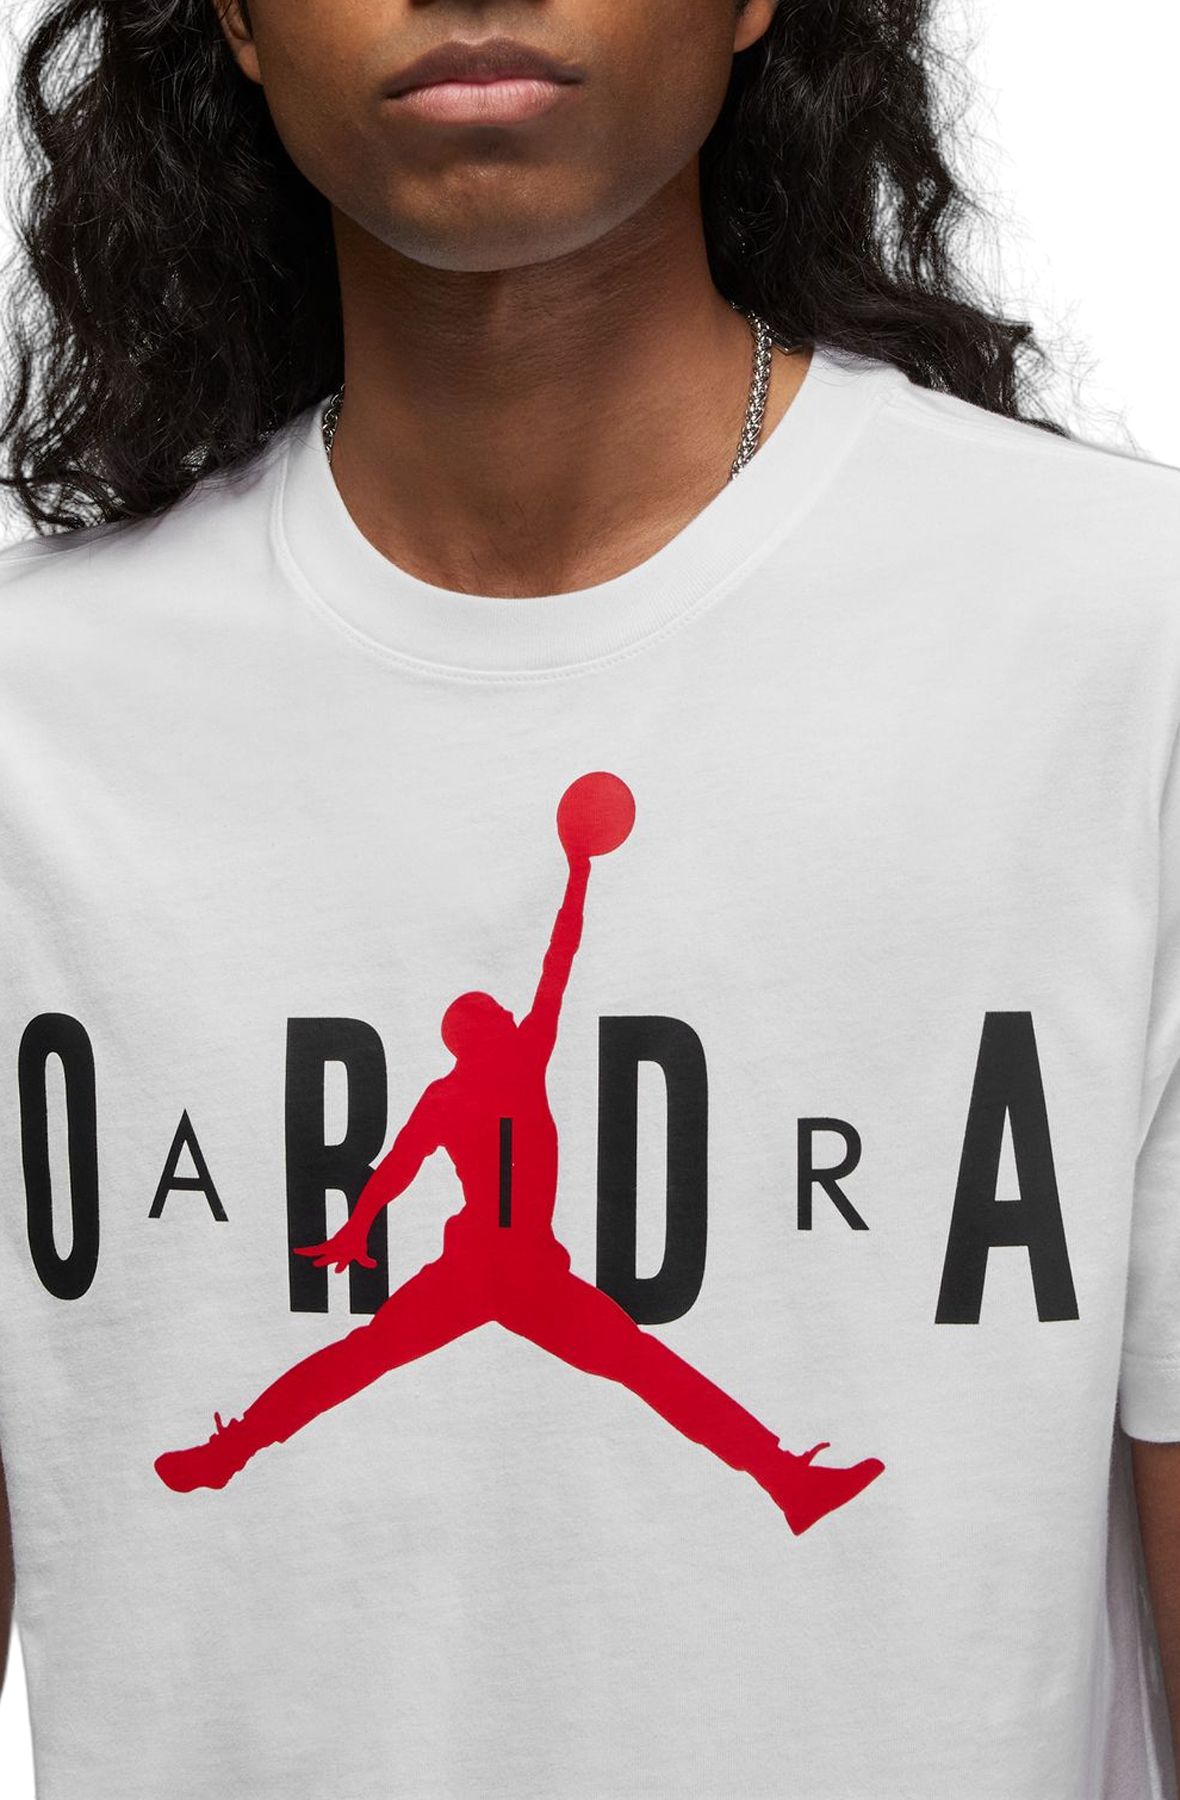 Jordan, Shirts, Air Jordan Hbr Stretch Tshirt Whitegym Red